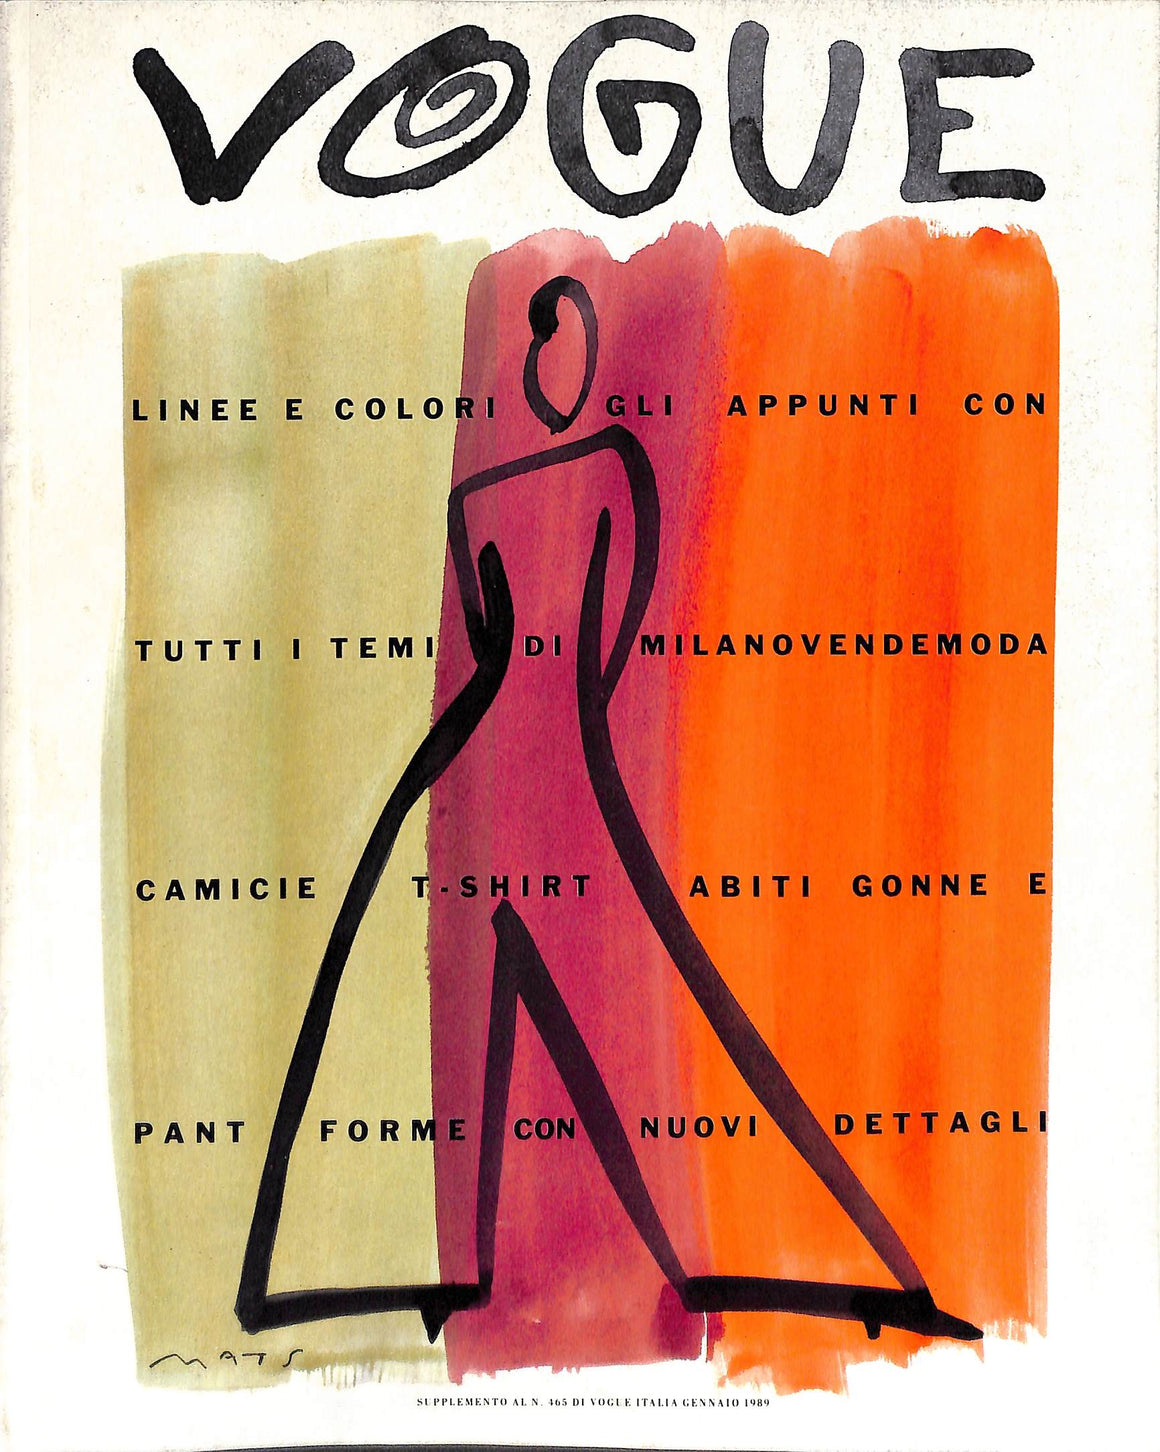 Vogue: Supplemento Al N. 465 Di Vogue Italia Gennaio 1989